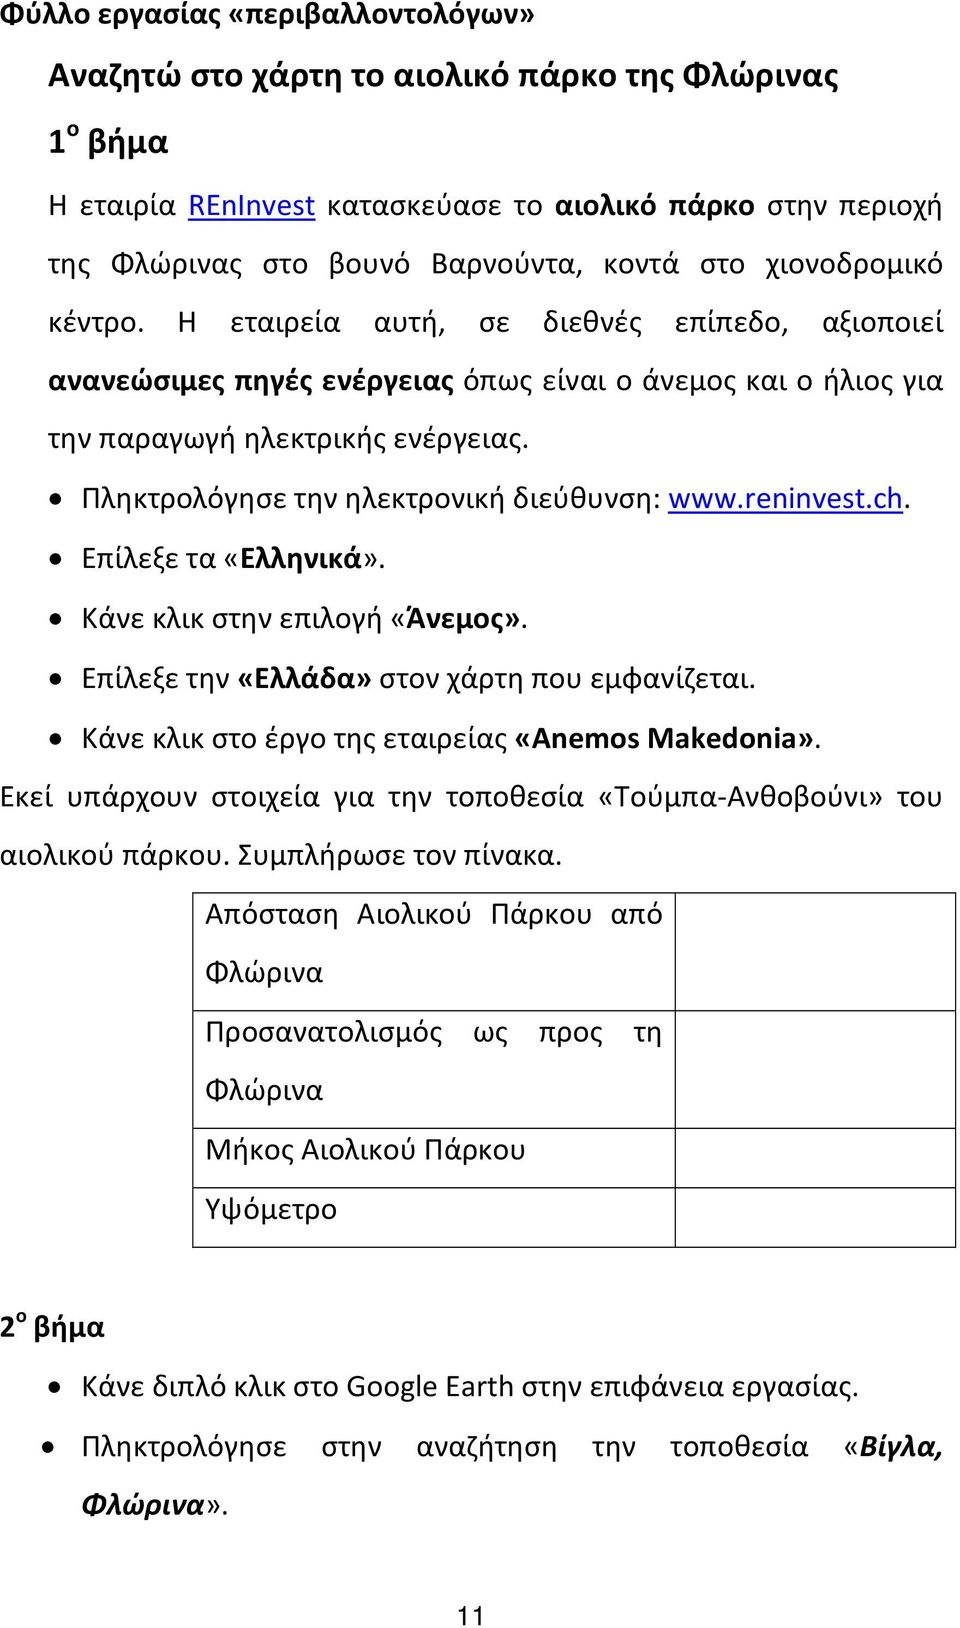 Πληκτρολόγησε την ηλεκτρονική διεύθυνση: www.reninvest.ch. Επίλεξε τα «Ελληνικά». Κάνε κλικ στην επιλογή «Άνεμος». Επίλεξε την «Ελλάδα» στον χάρτη που εμφανίζεται.